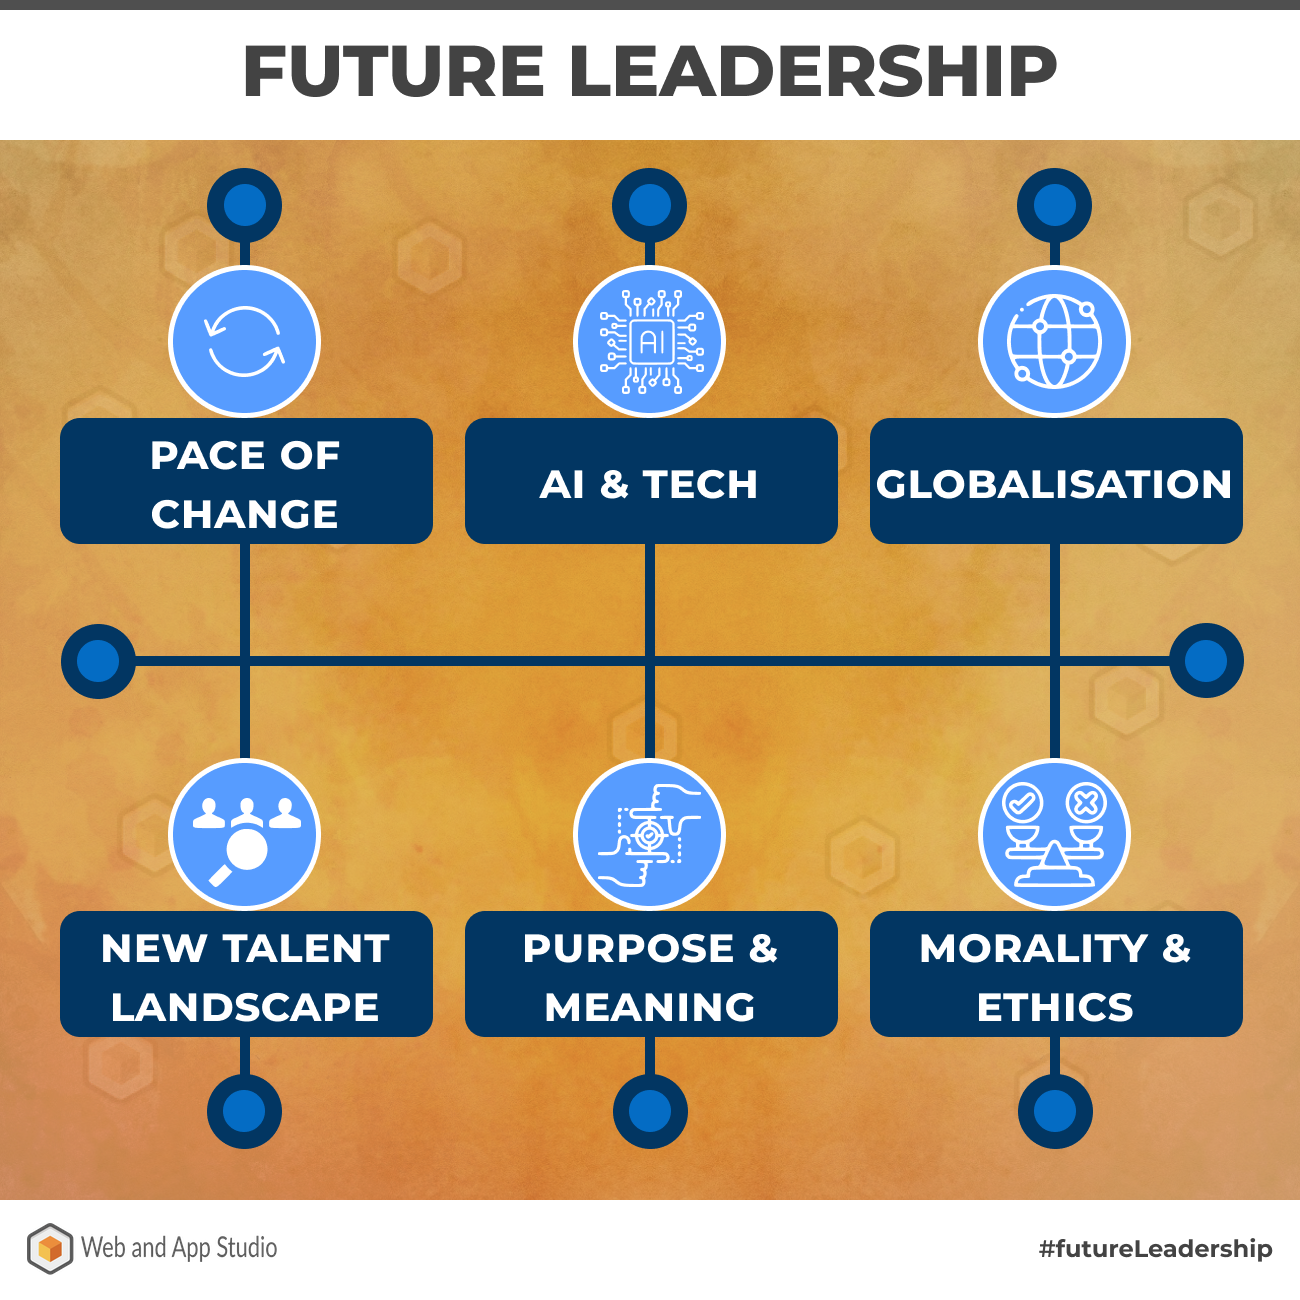 Future Leadership